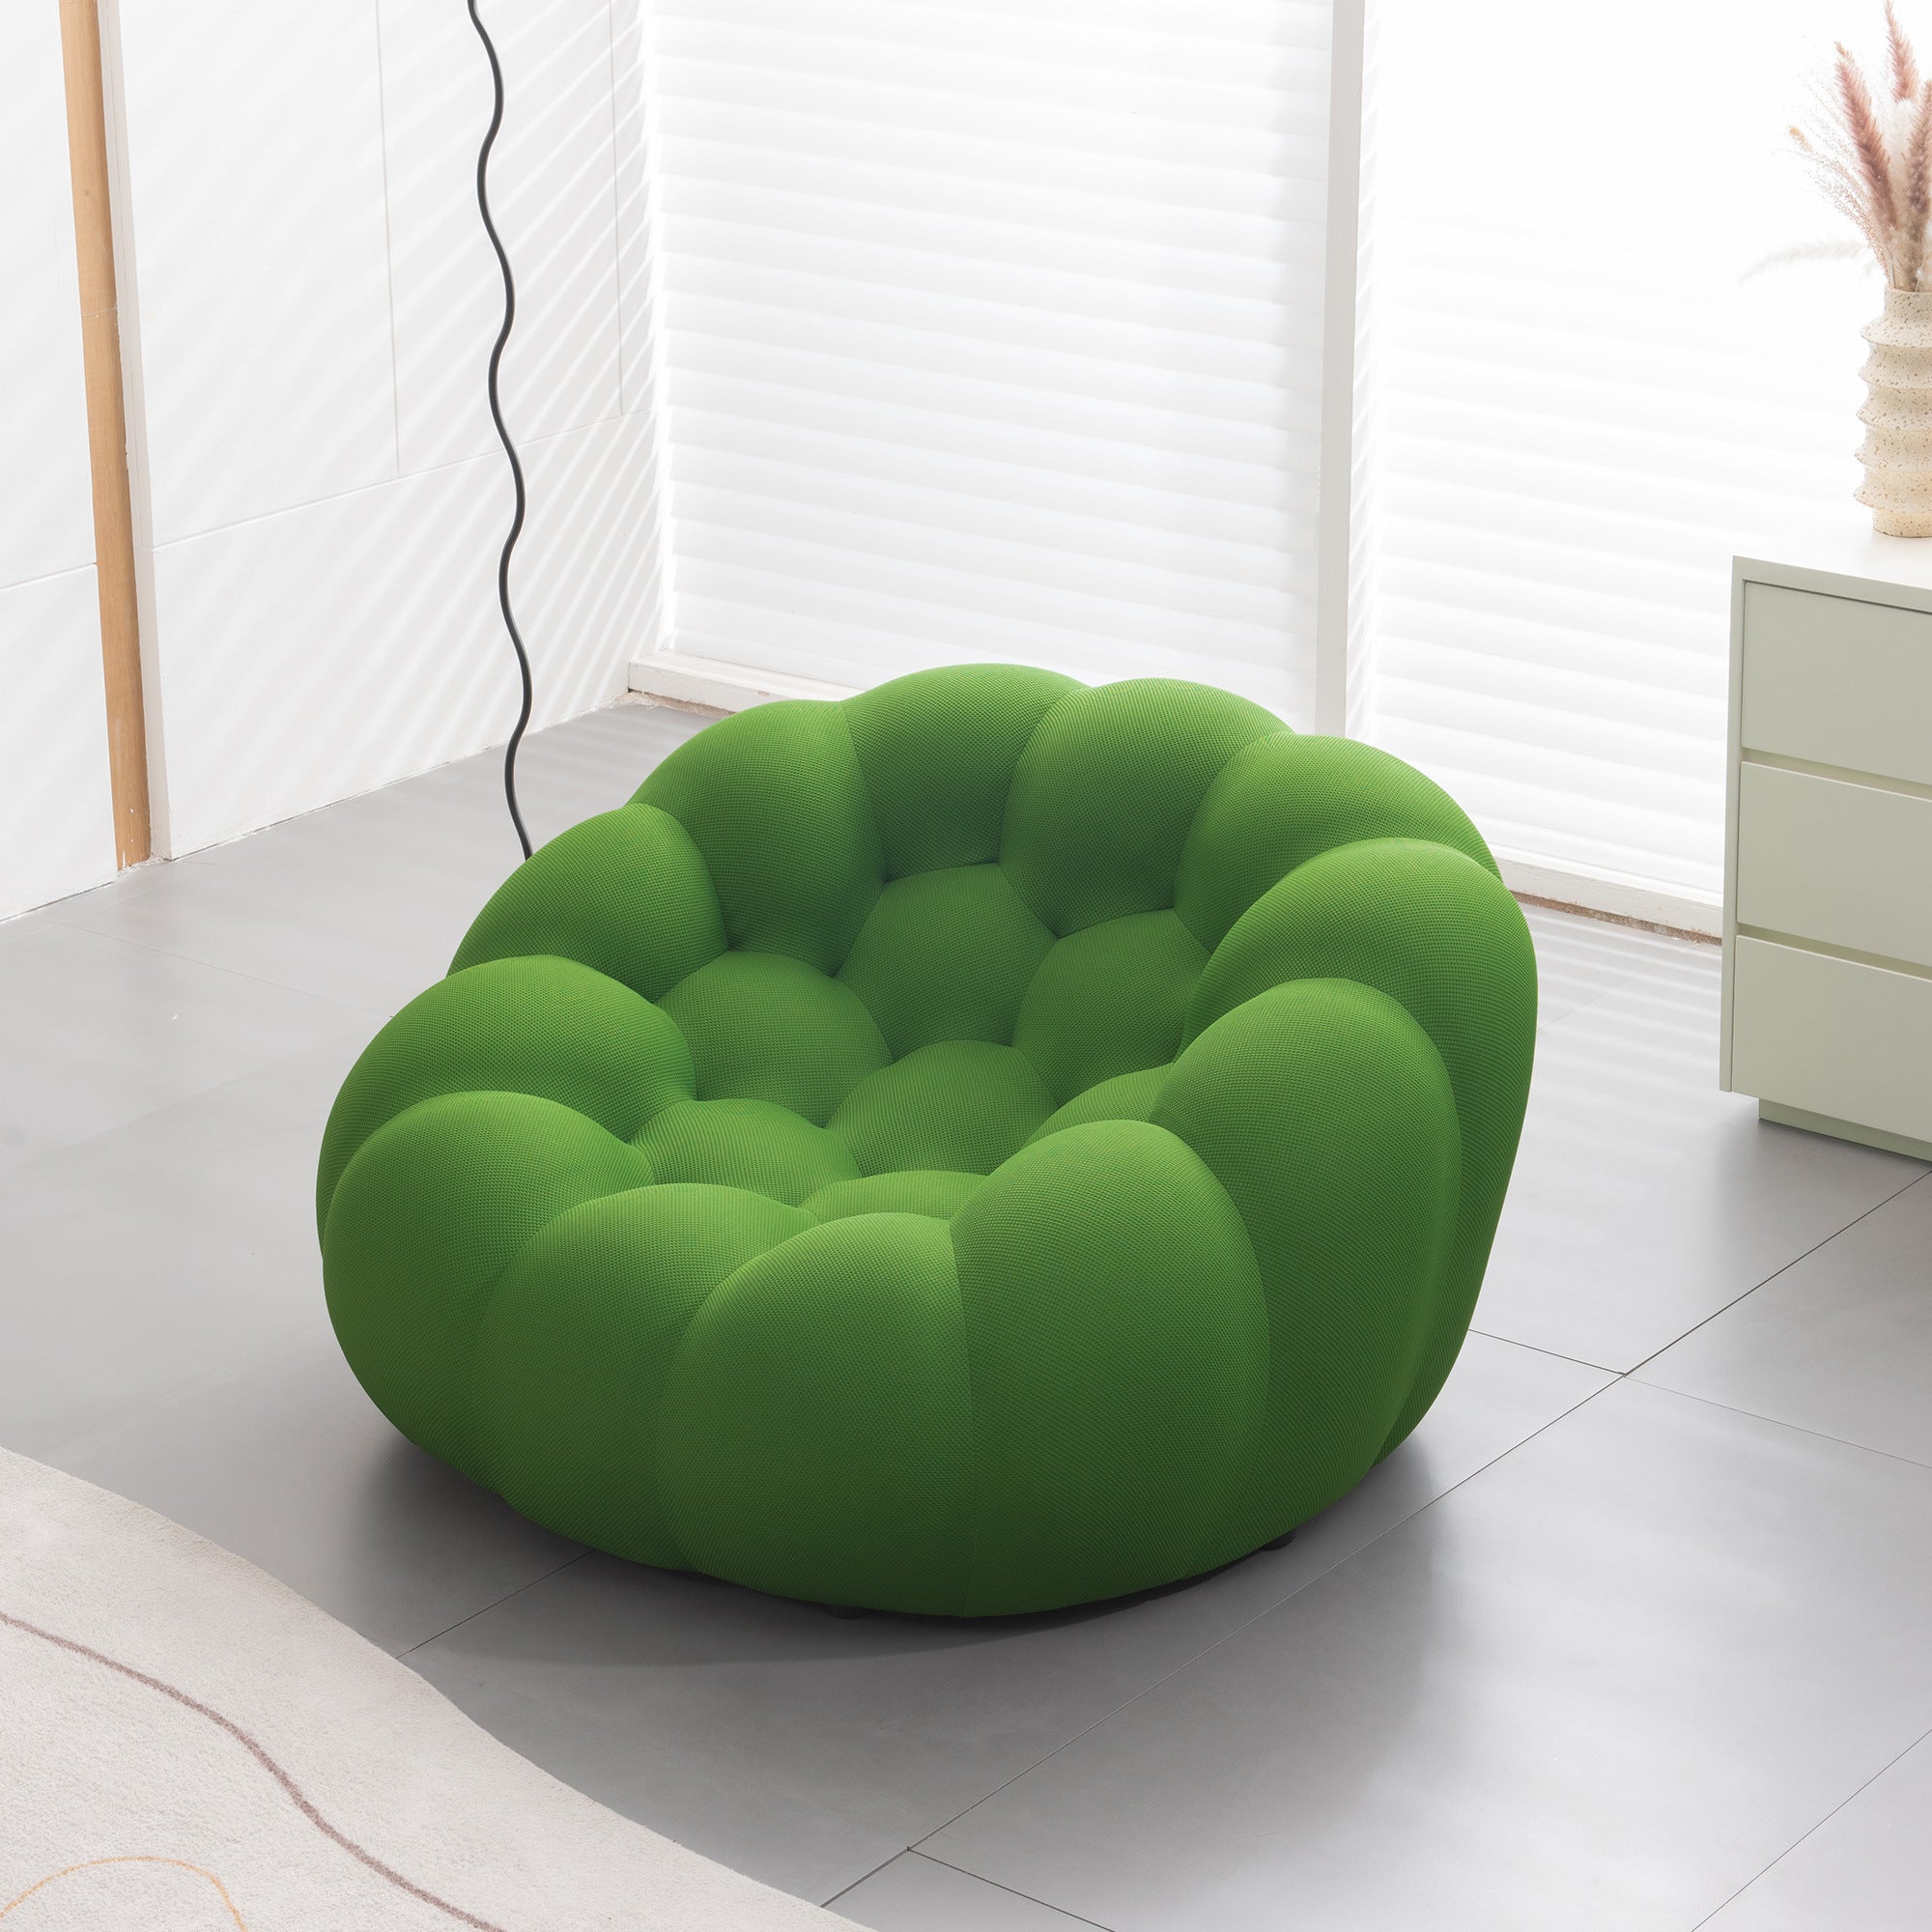 the green Bubble  sofa